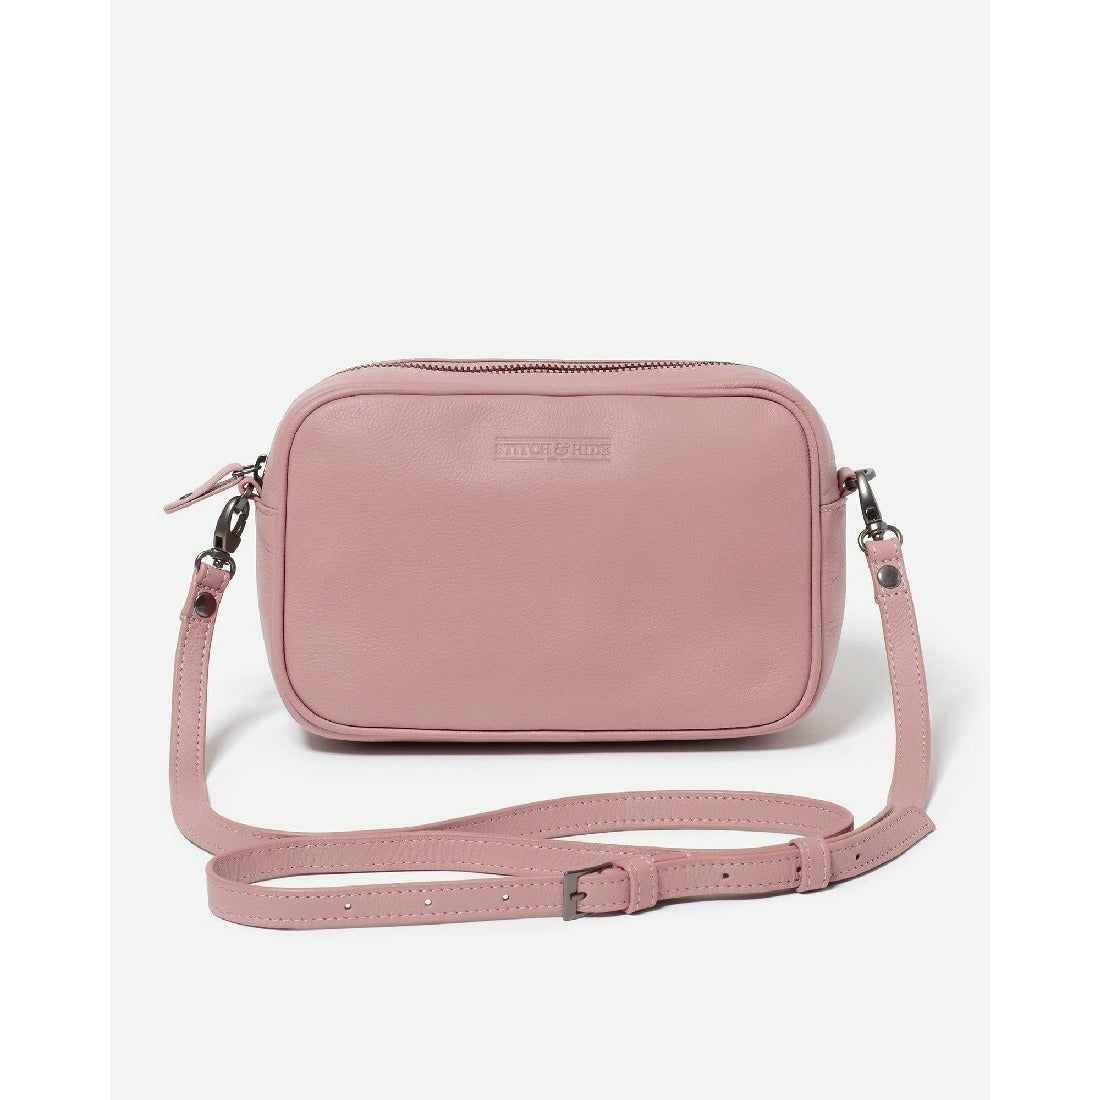 Stitch & Hide Taylor Leather Handbag - Little Extras Lifestyle Boutique